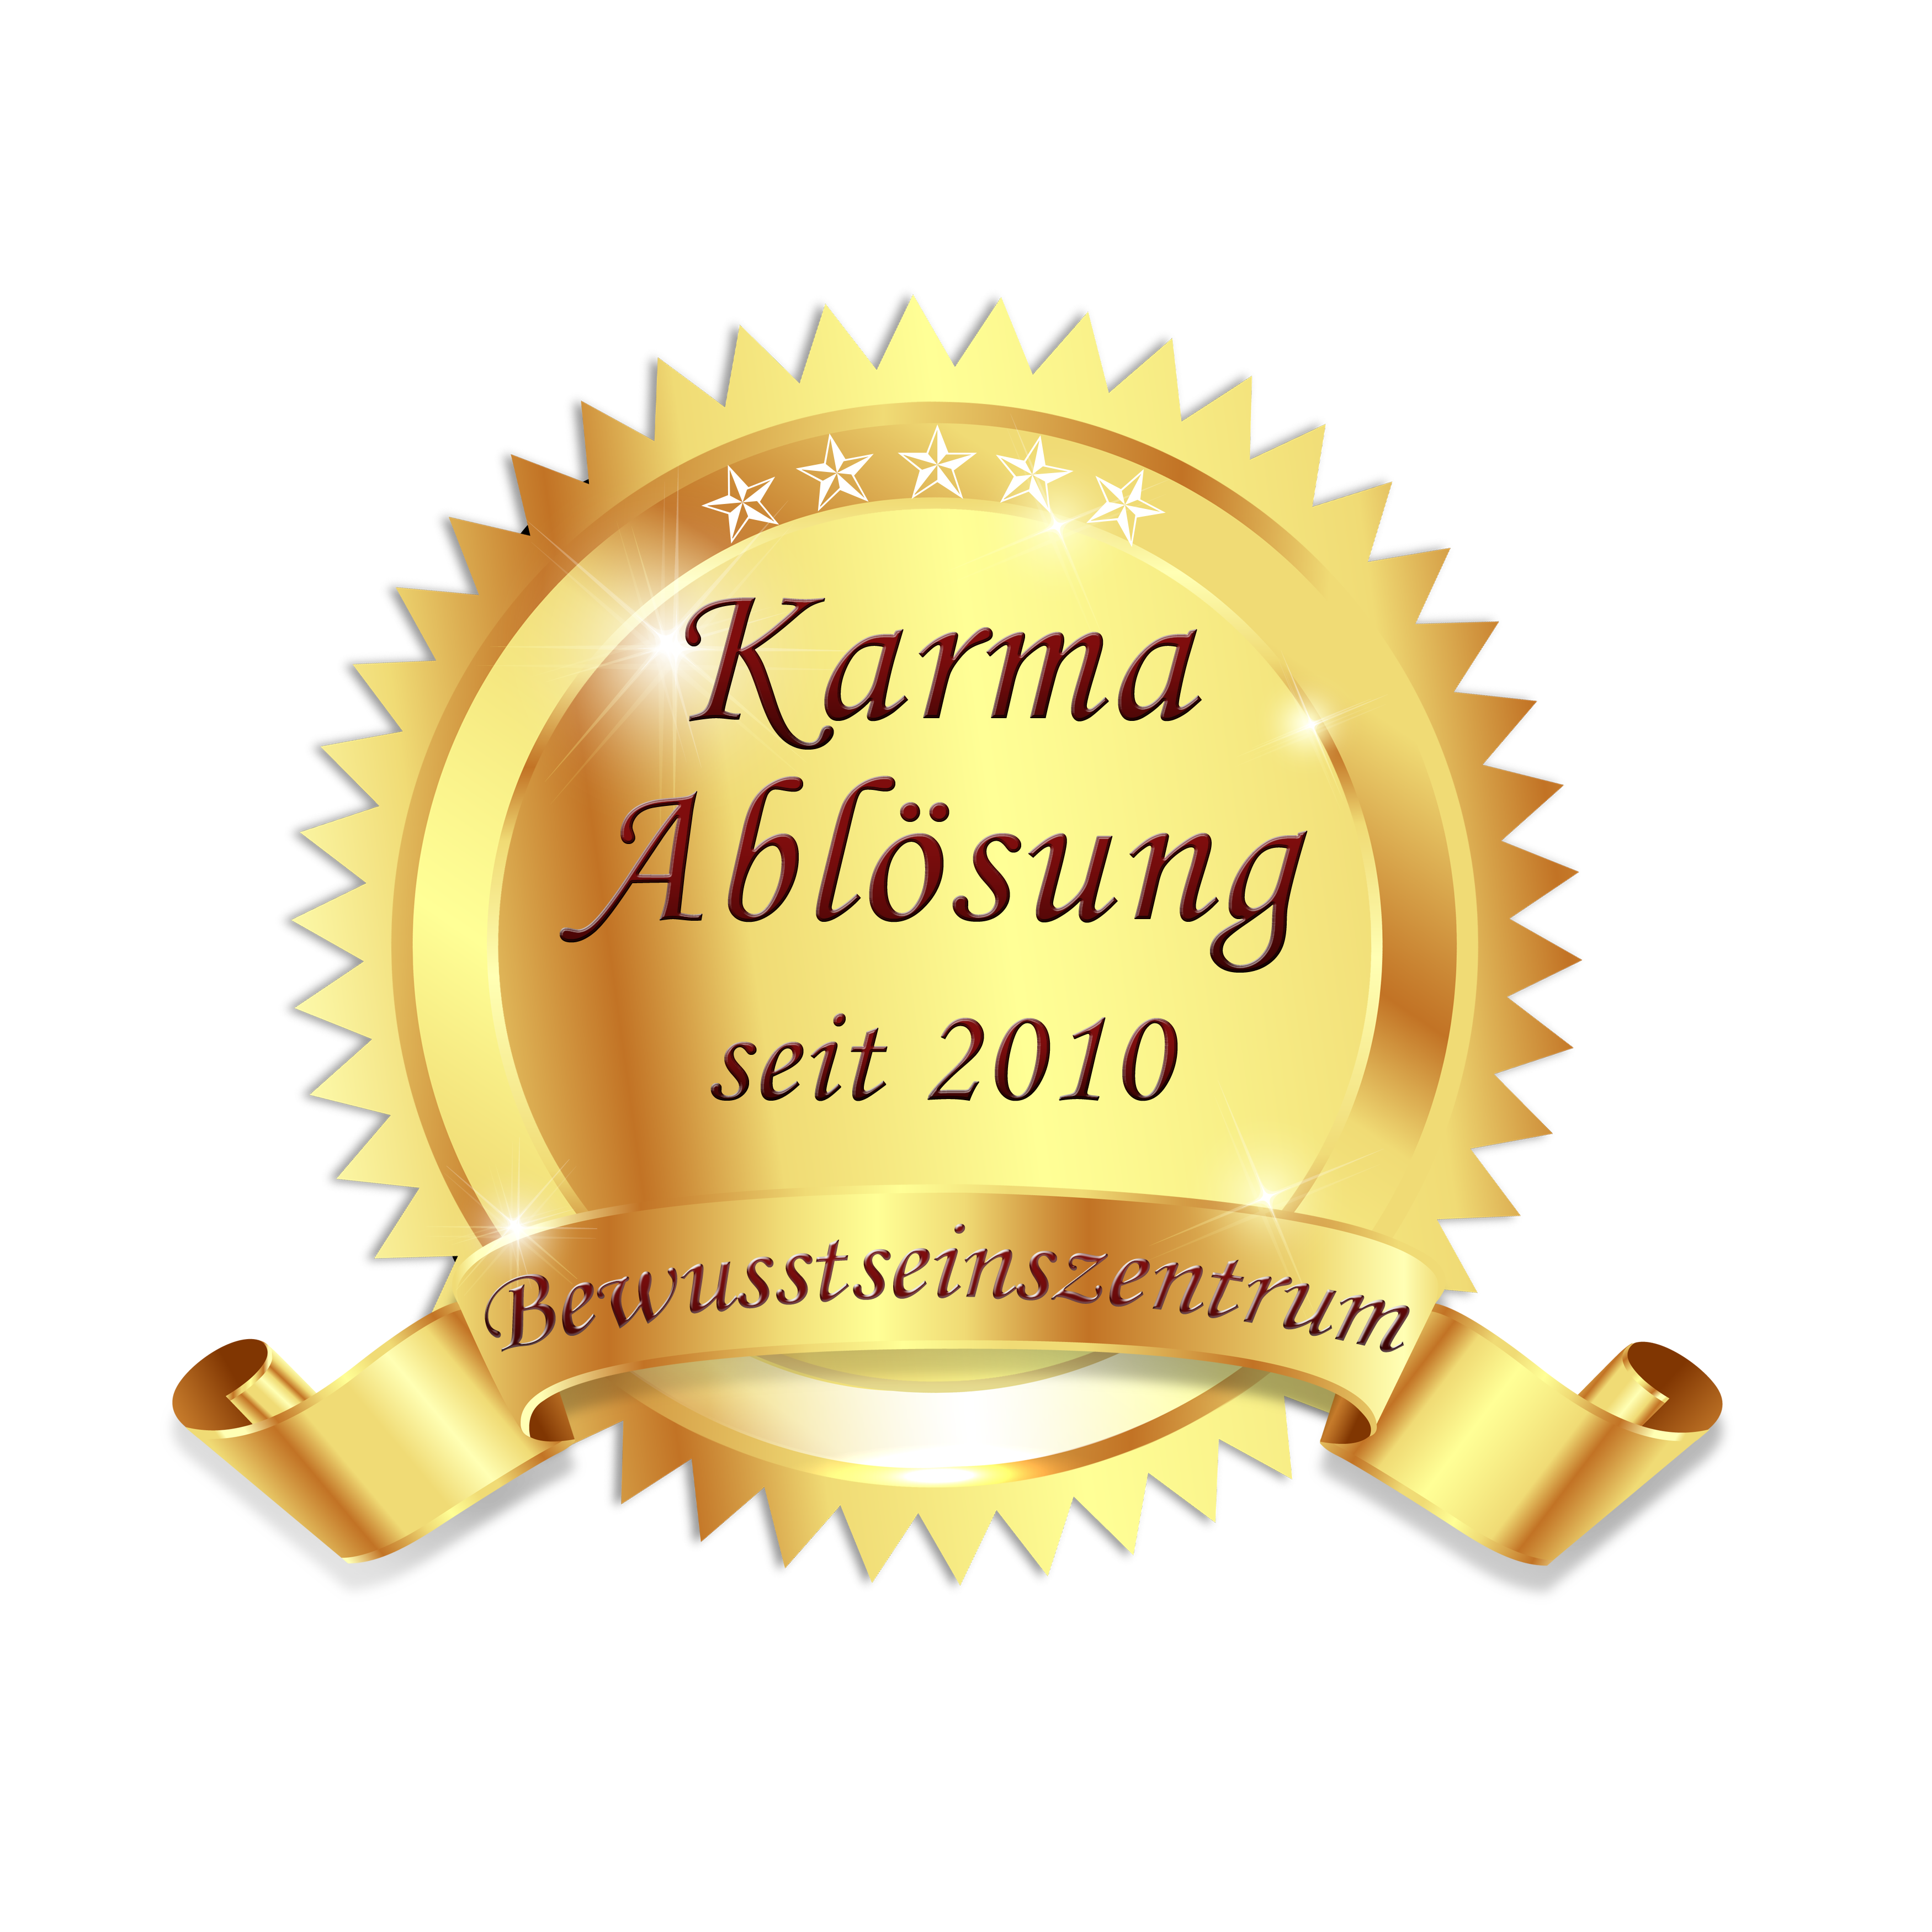 Karma Ablösung seit 2010